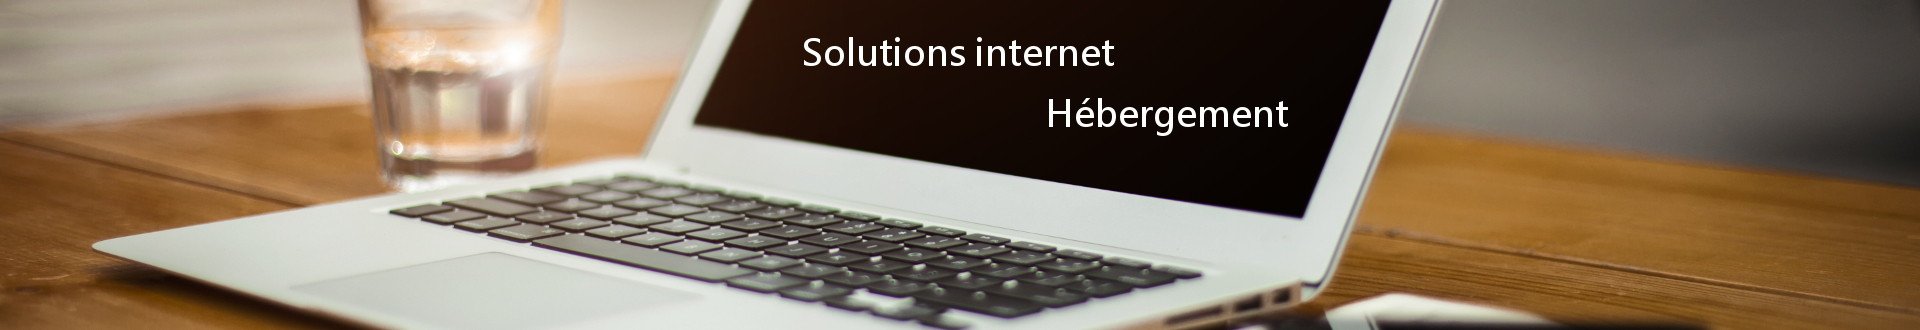 Solutions internet et hébergement